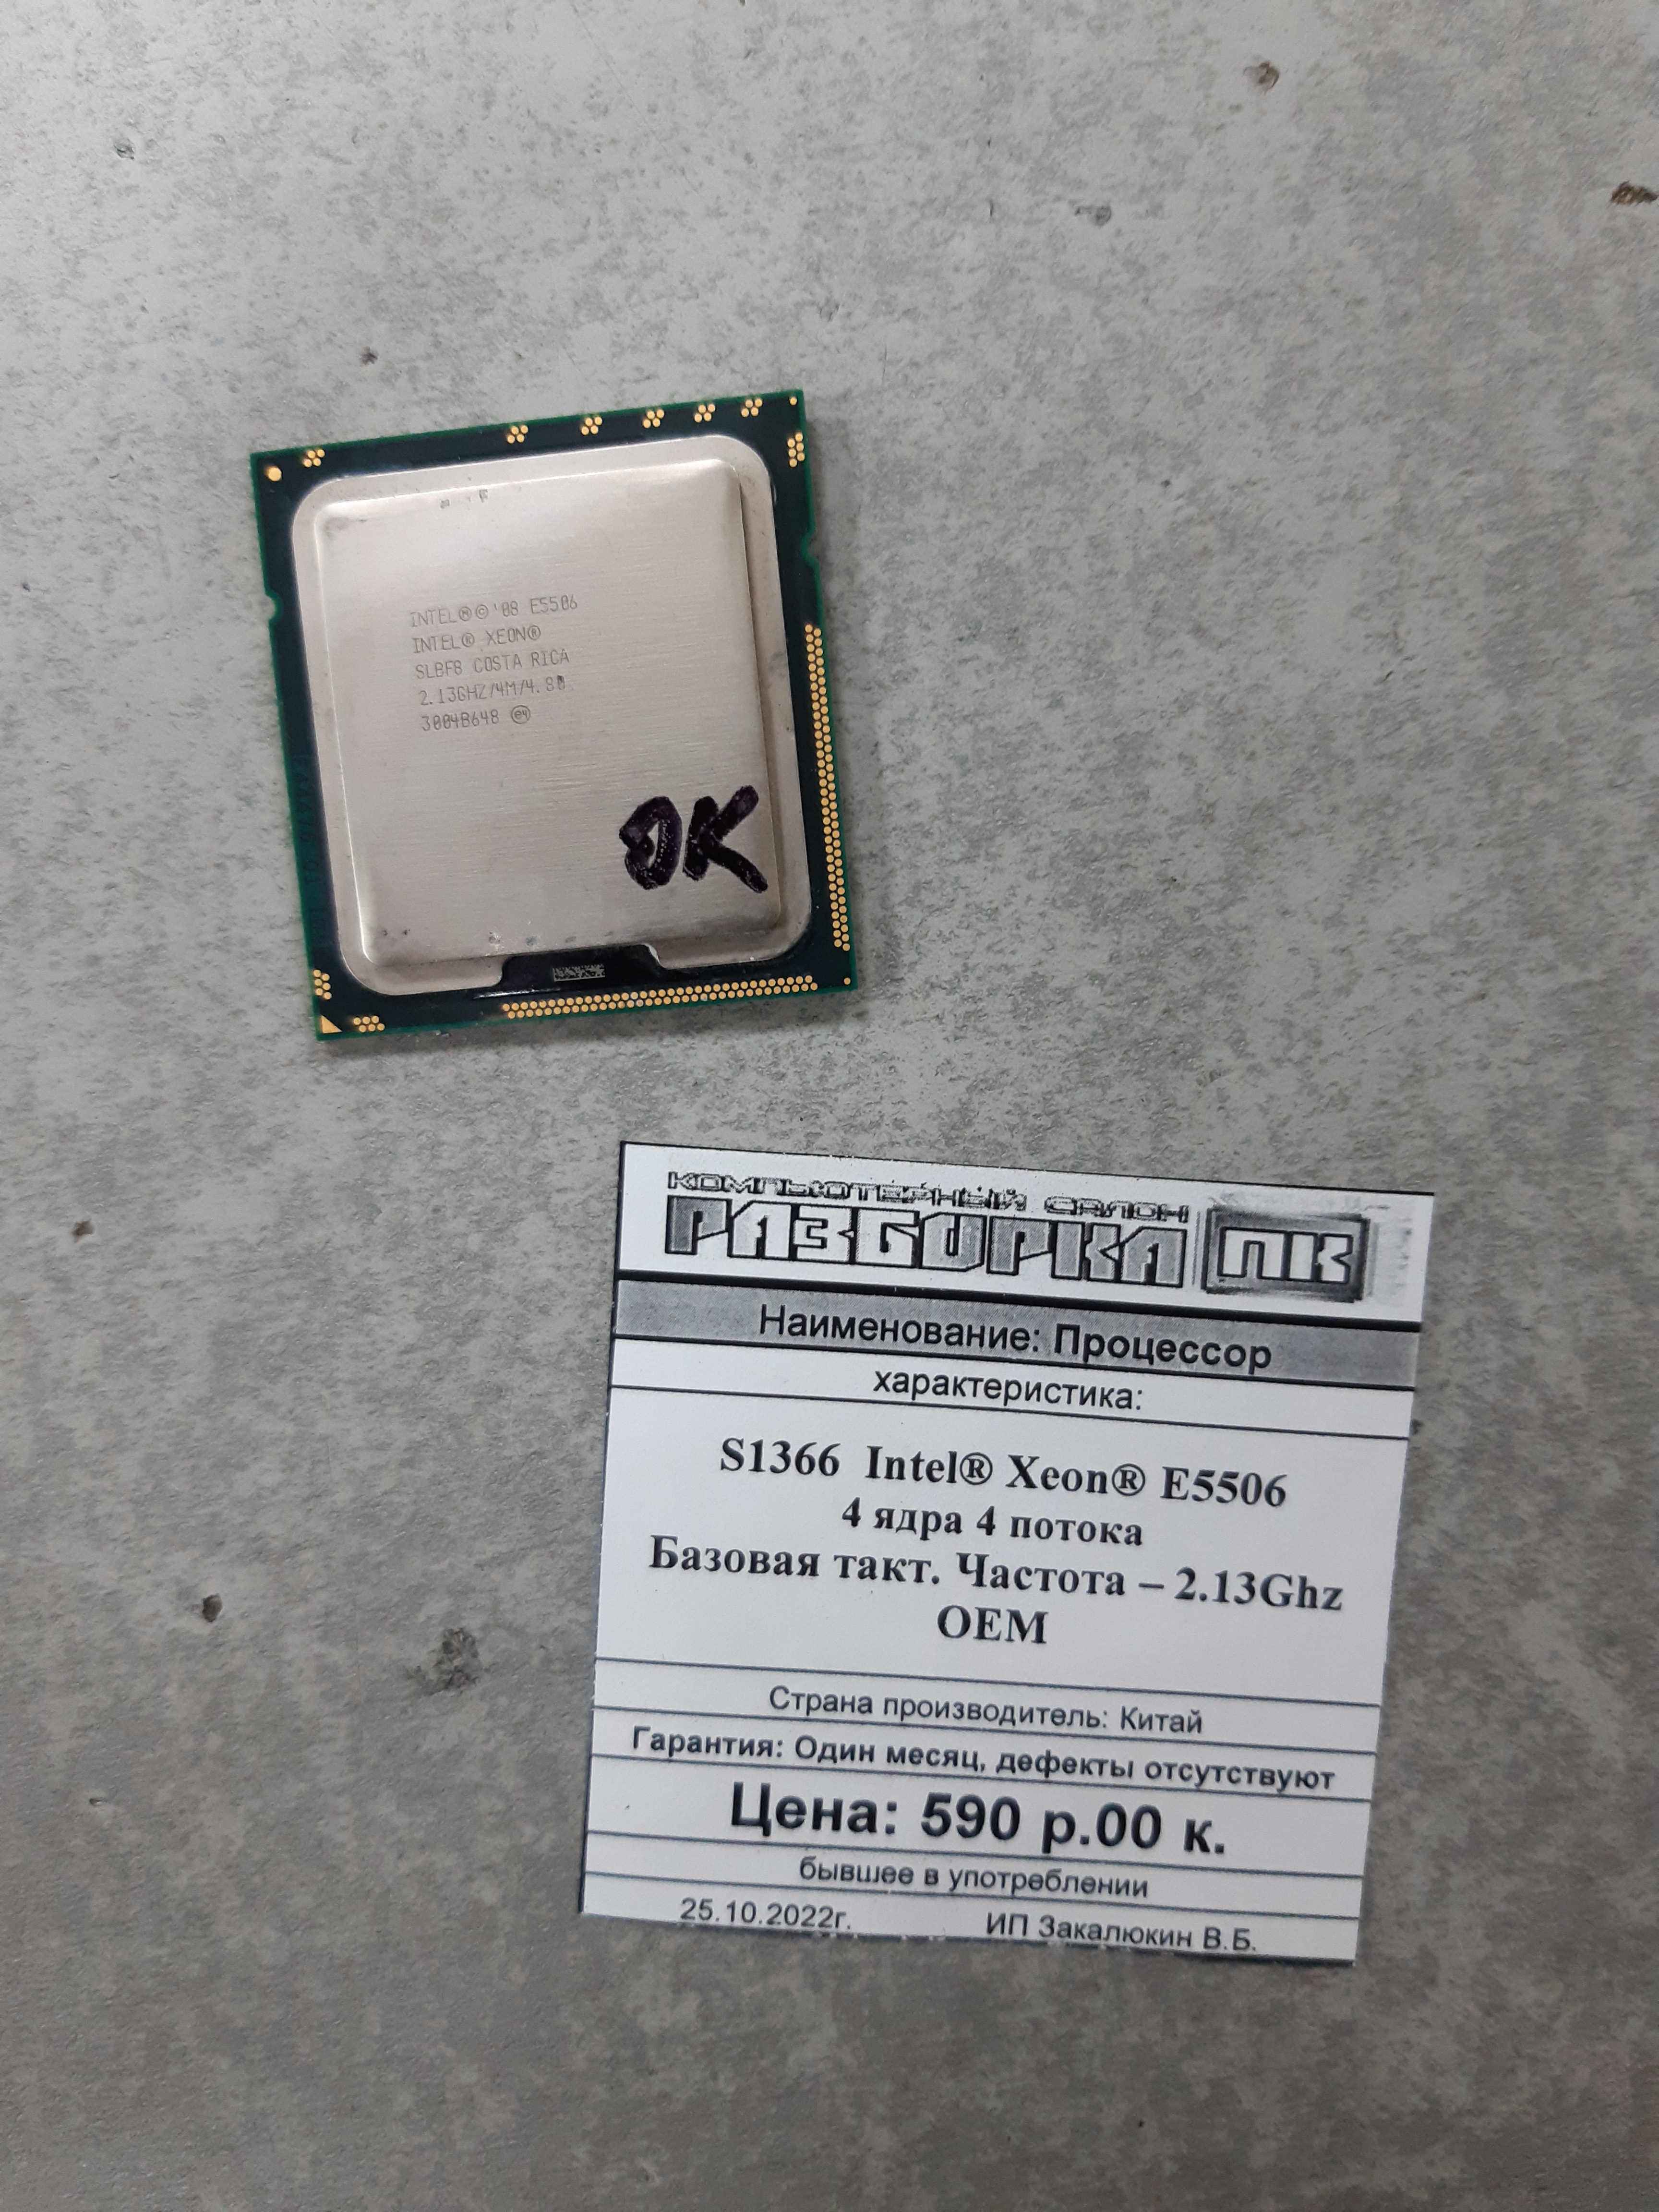 Процессор S1366 Intel®Xeon® E5506